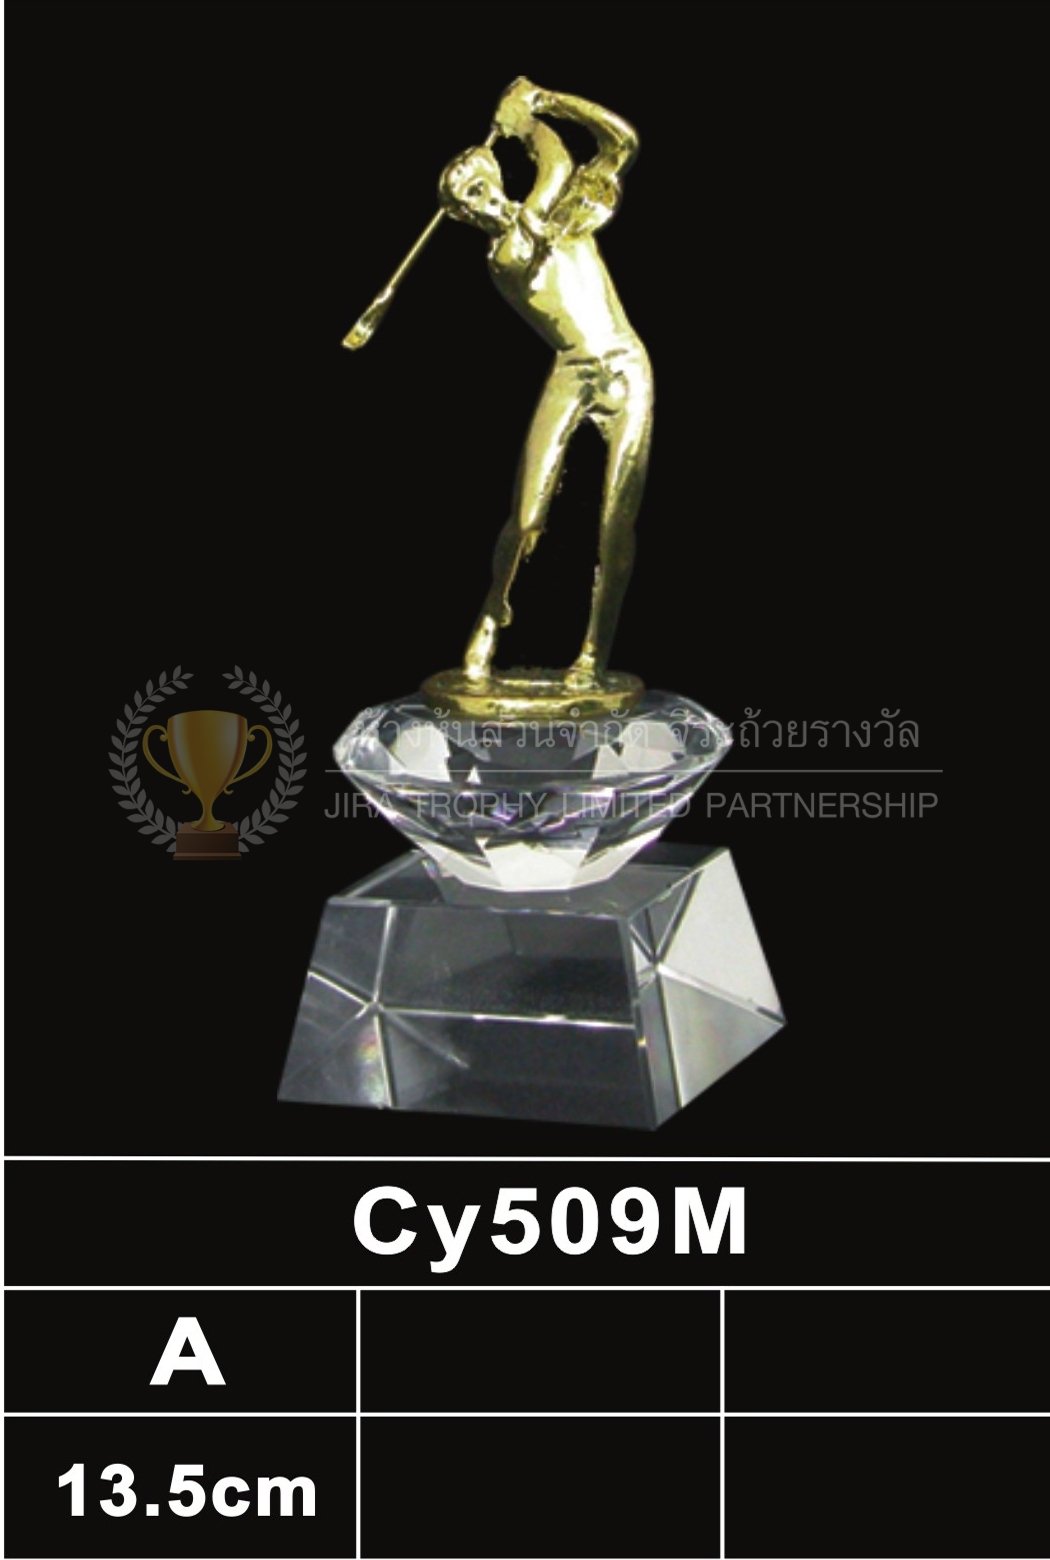 ถ้วยรางวัลคริสตัล CY509M